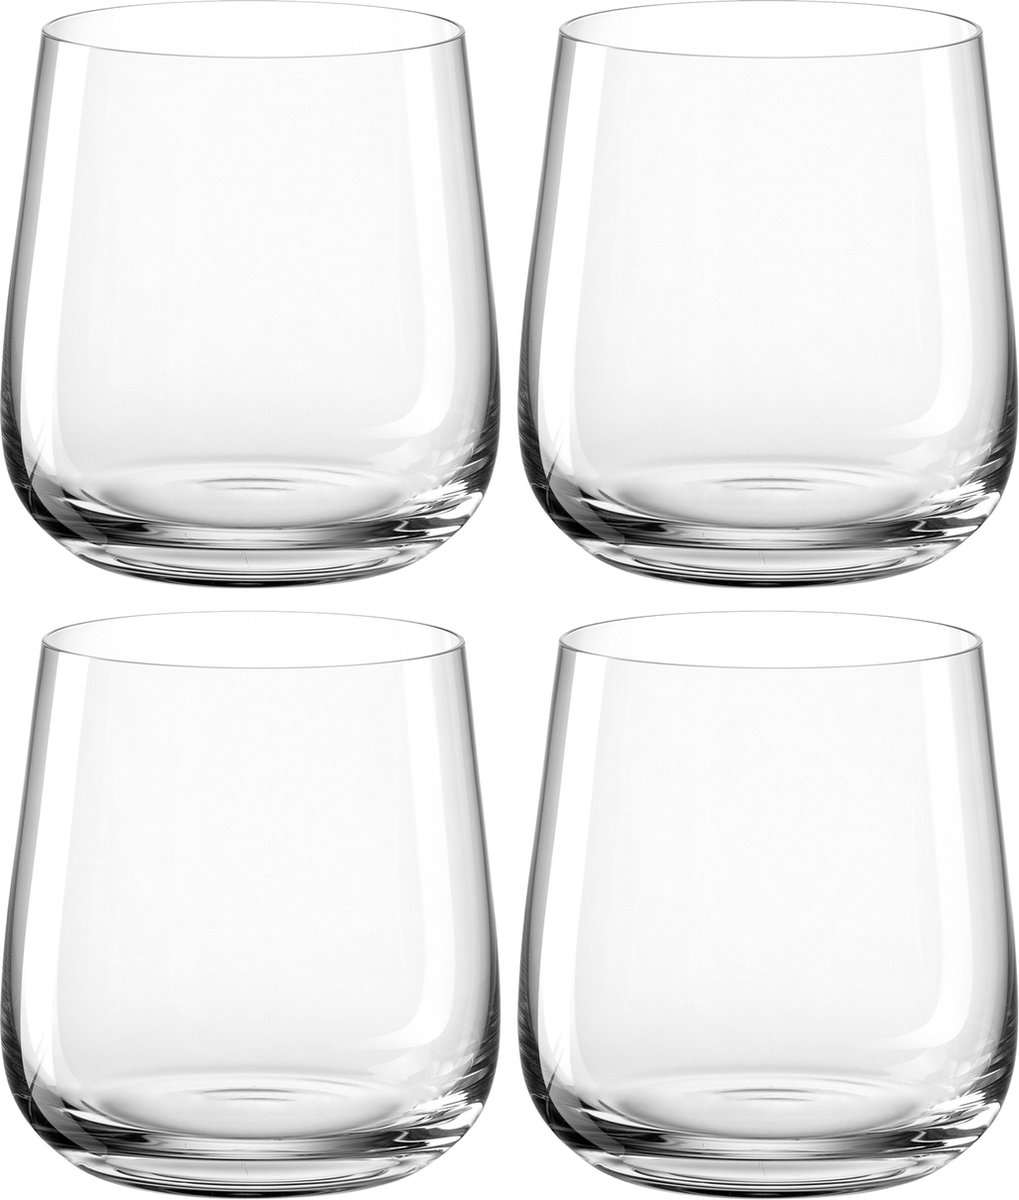 Leonardo Brunelli Wijnglazen 400ml - set van 4 glazen